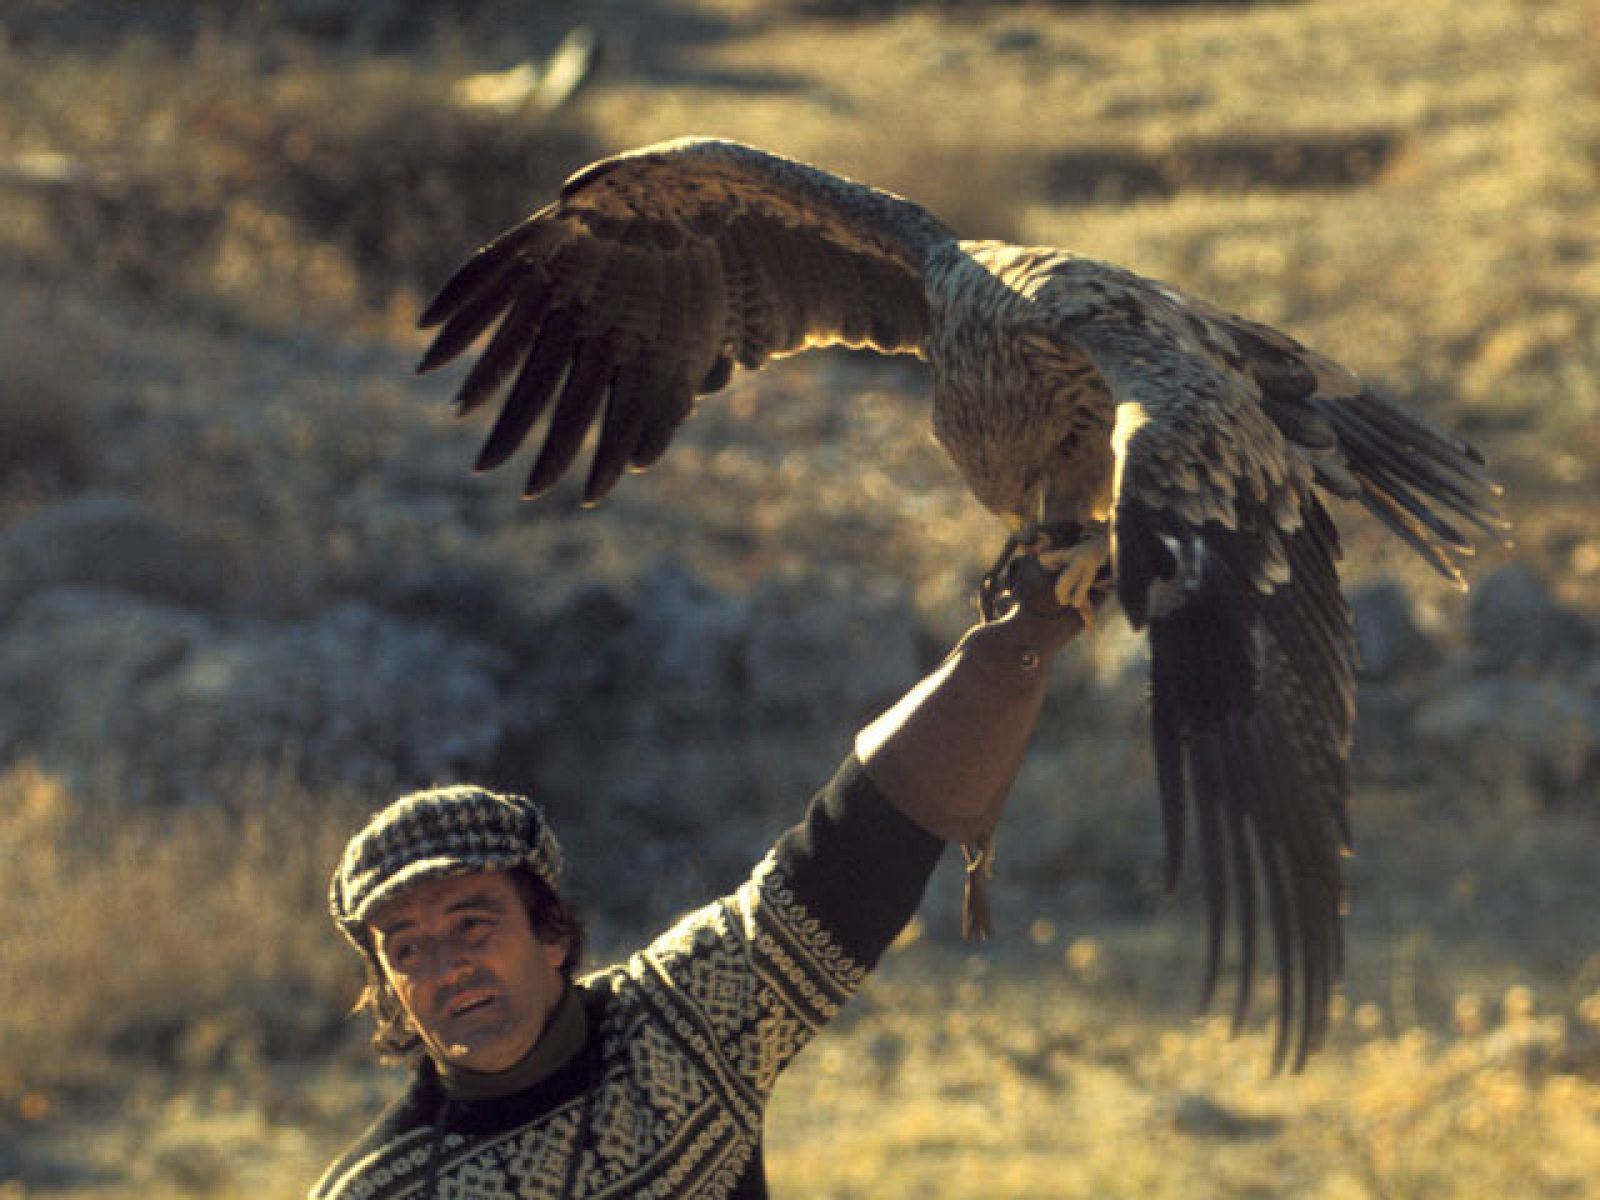 El hombre y la tierra - La doma del águila real para cazar raposos